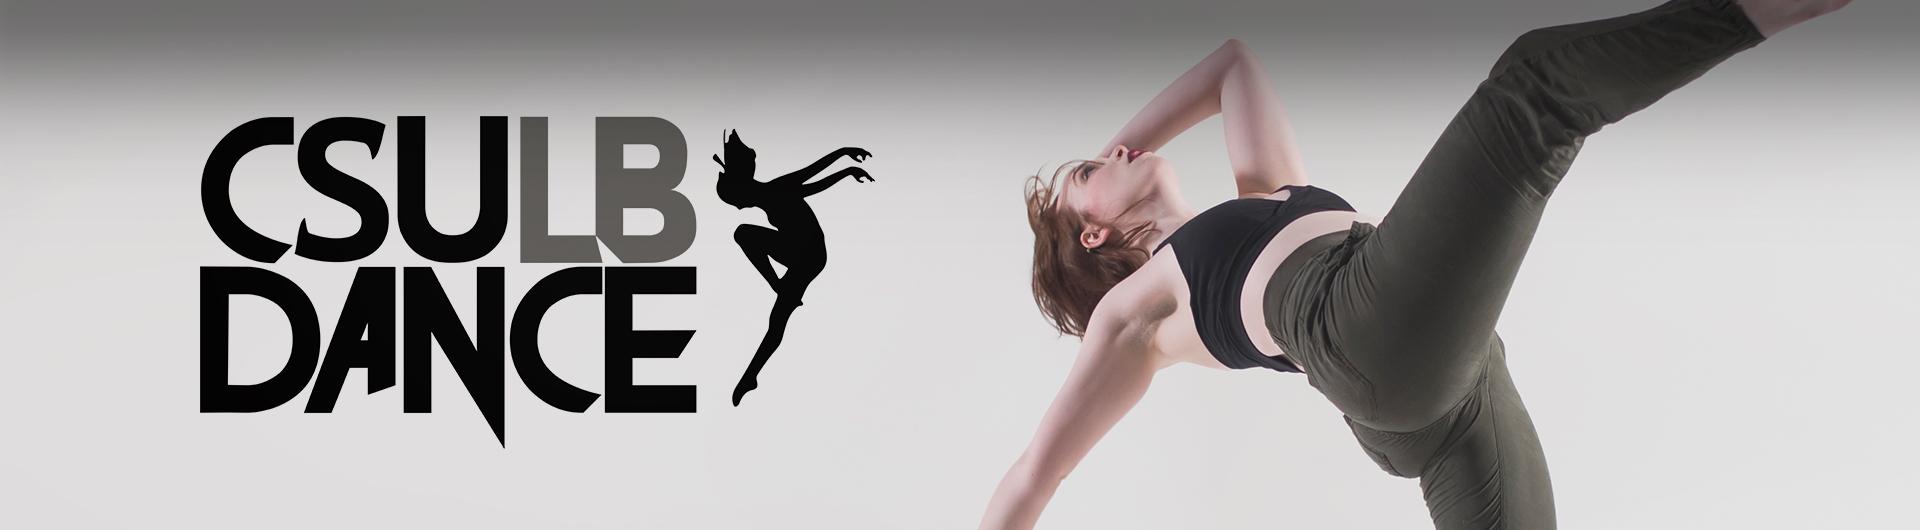 CSULB Dance Logo with dancer extending leg